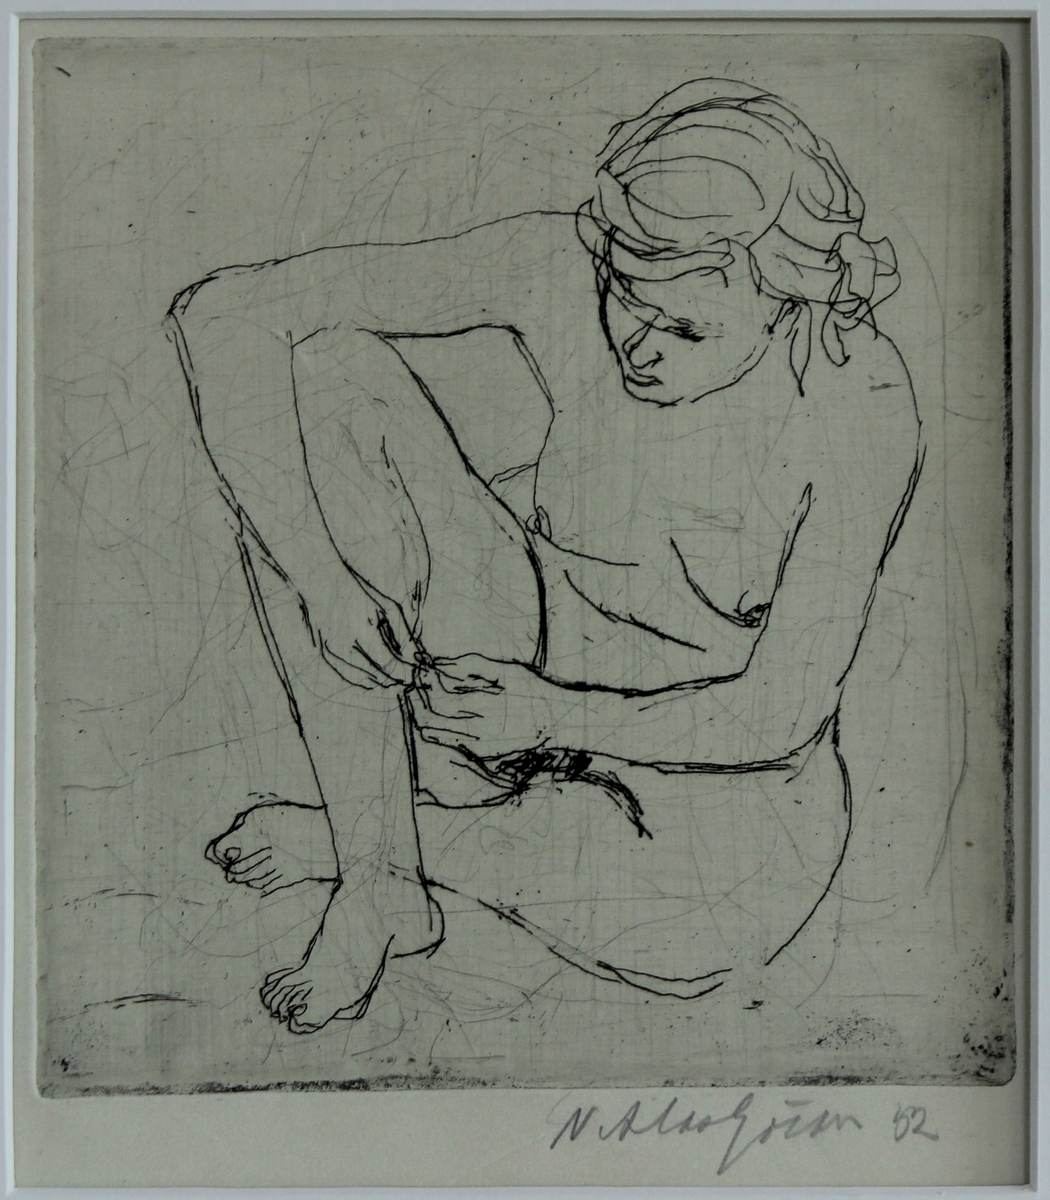 Etsning i stående format föreställande naken kvinna sittande med armen om ena benet, blicken ned.